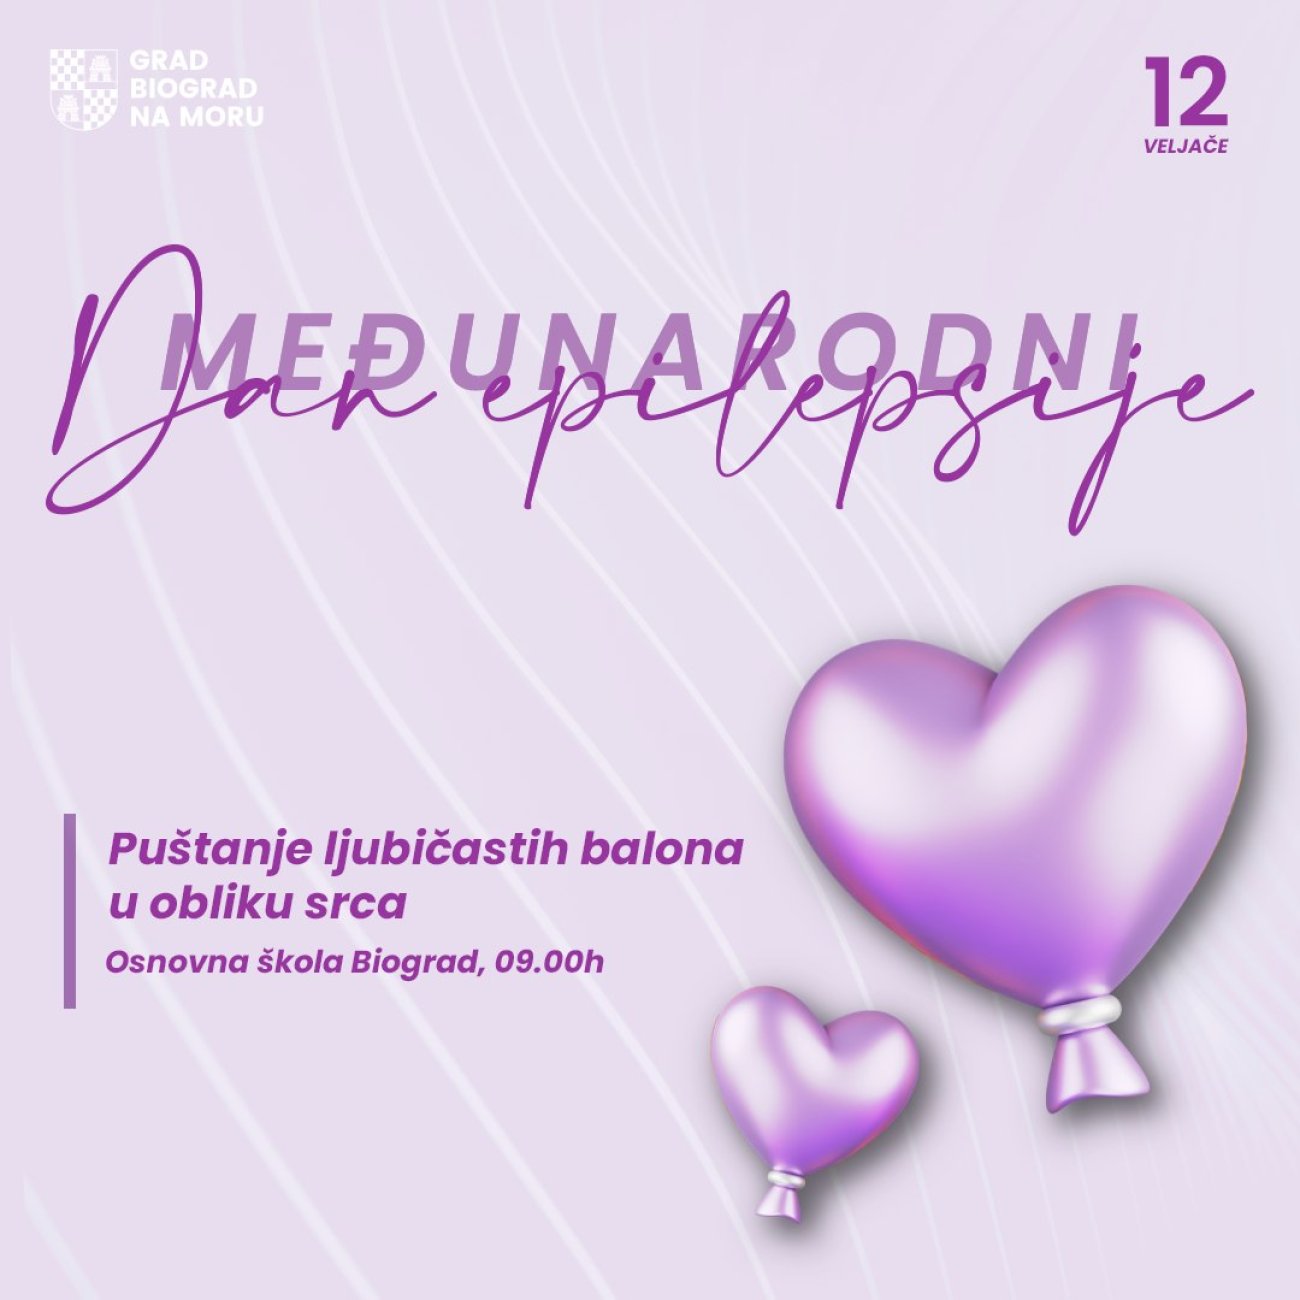 Puštanje ljubičastih balona u obliku srca povodom Međunarodnog dana epilepsije 12. veljače